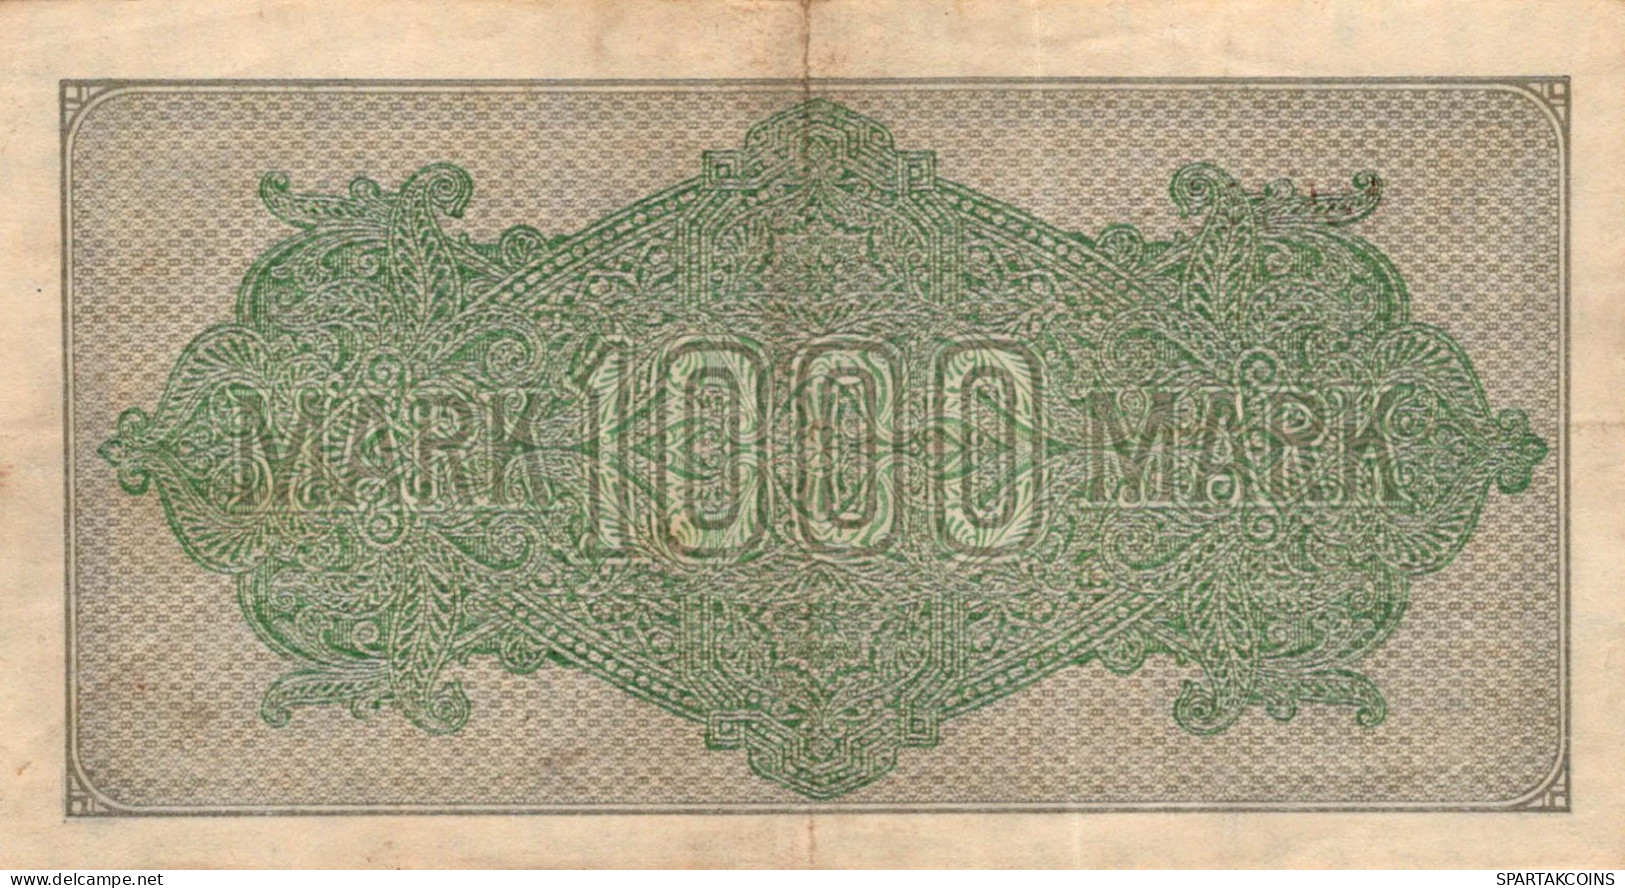 1000 MARK 1922 Stadt BERLIN DEUTSCHLAND Papiergeld Banknote #PL399 - [11] Local Banknote Issues